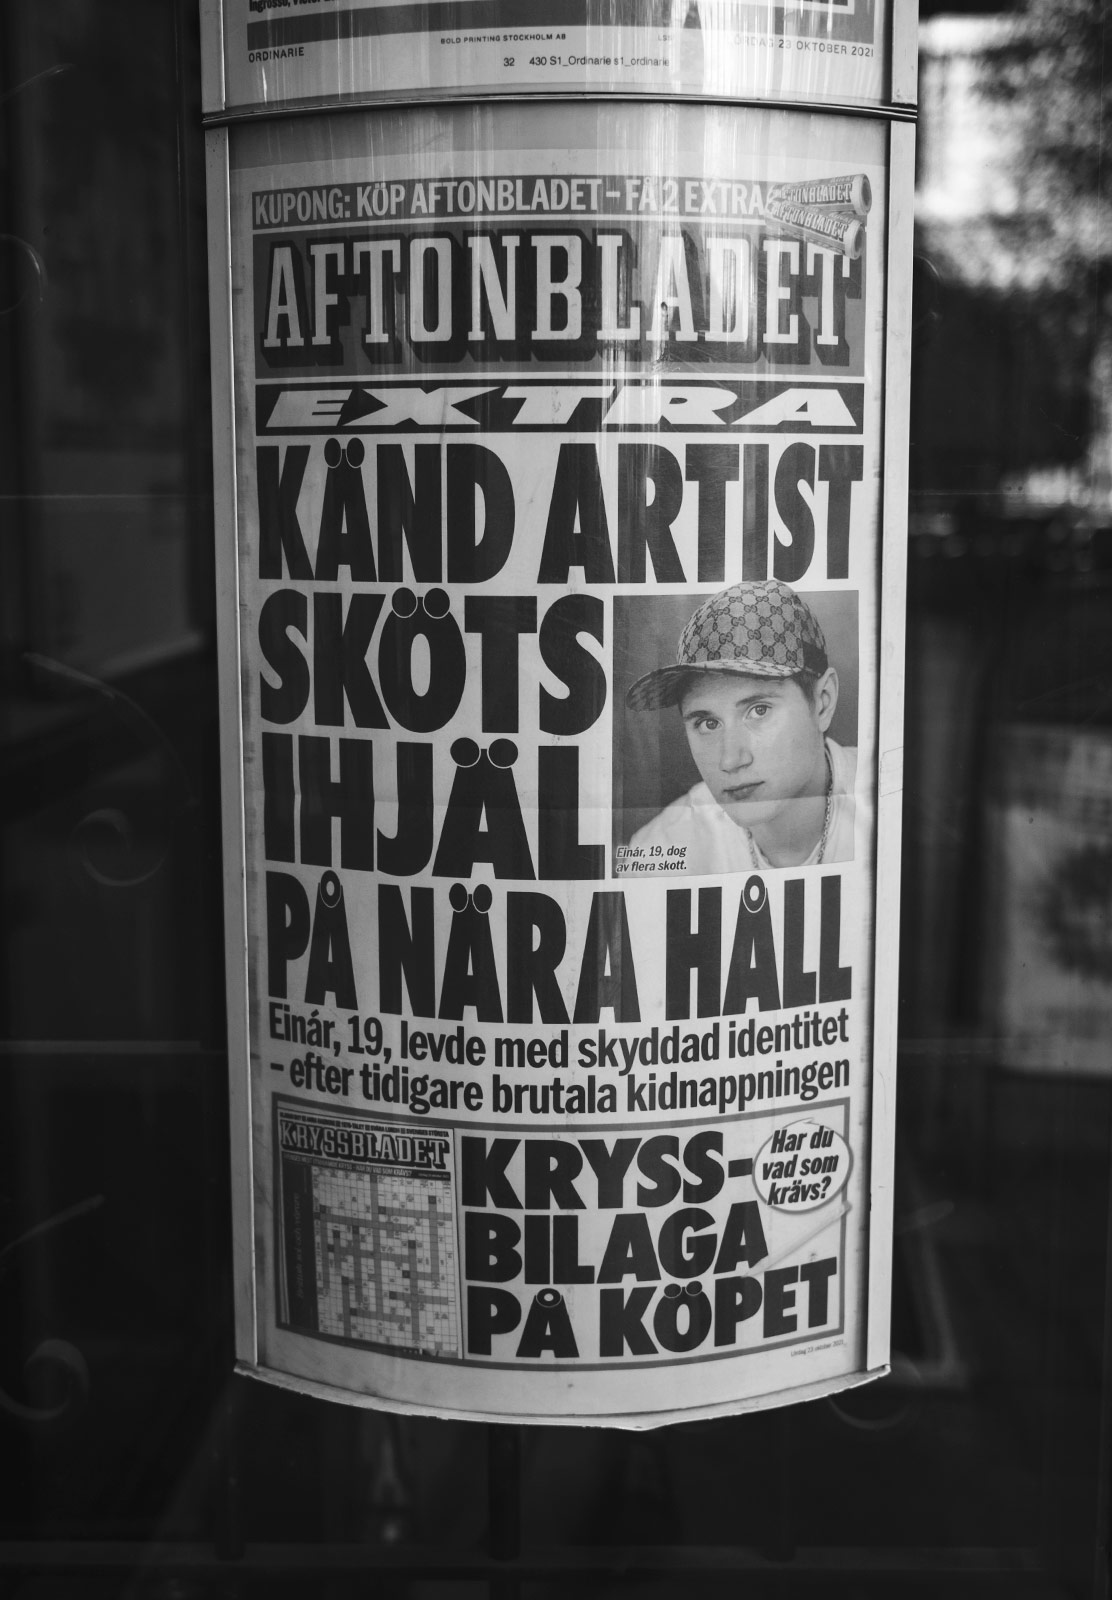 Einár in newspaper cover